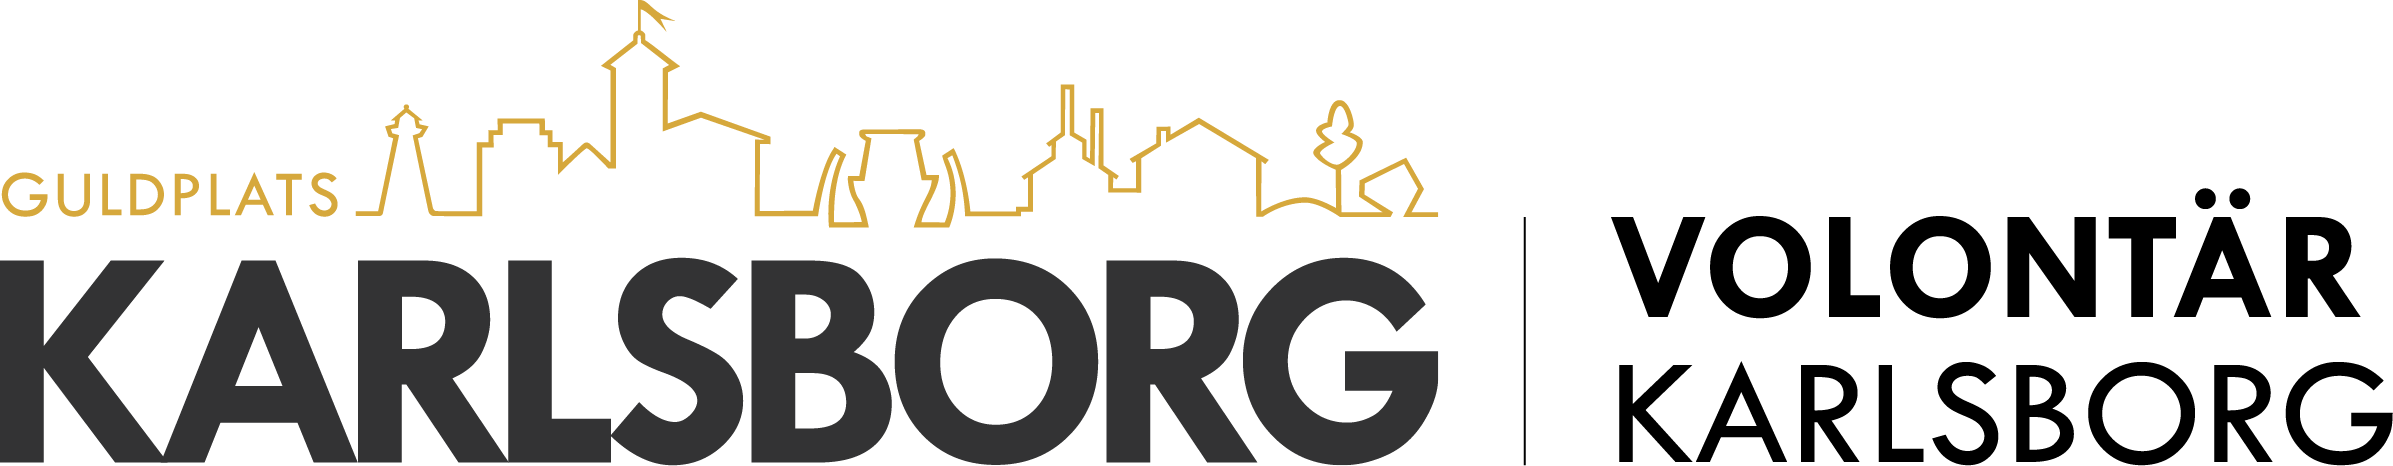 Logotyp Guldplats Karlsborg - Volontär Karlsborg